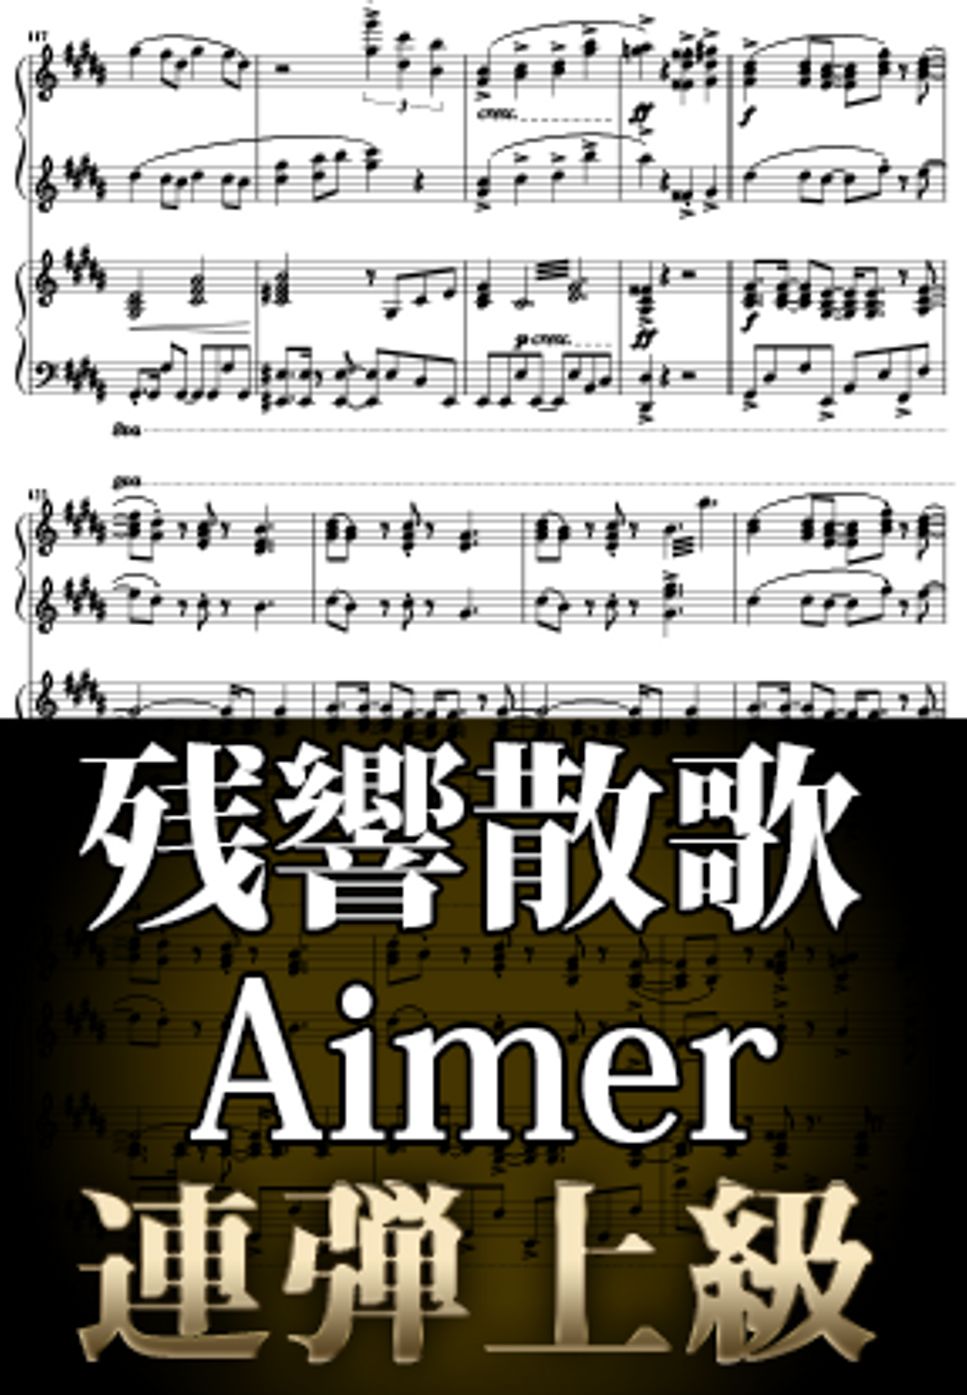 Aimer - 残響散歌 (ピアノ連弾上級  / TVアニメ『鬼滅の刃遊郭編』OP) by Suu